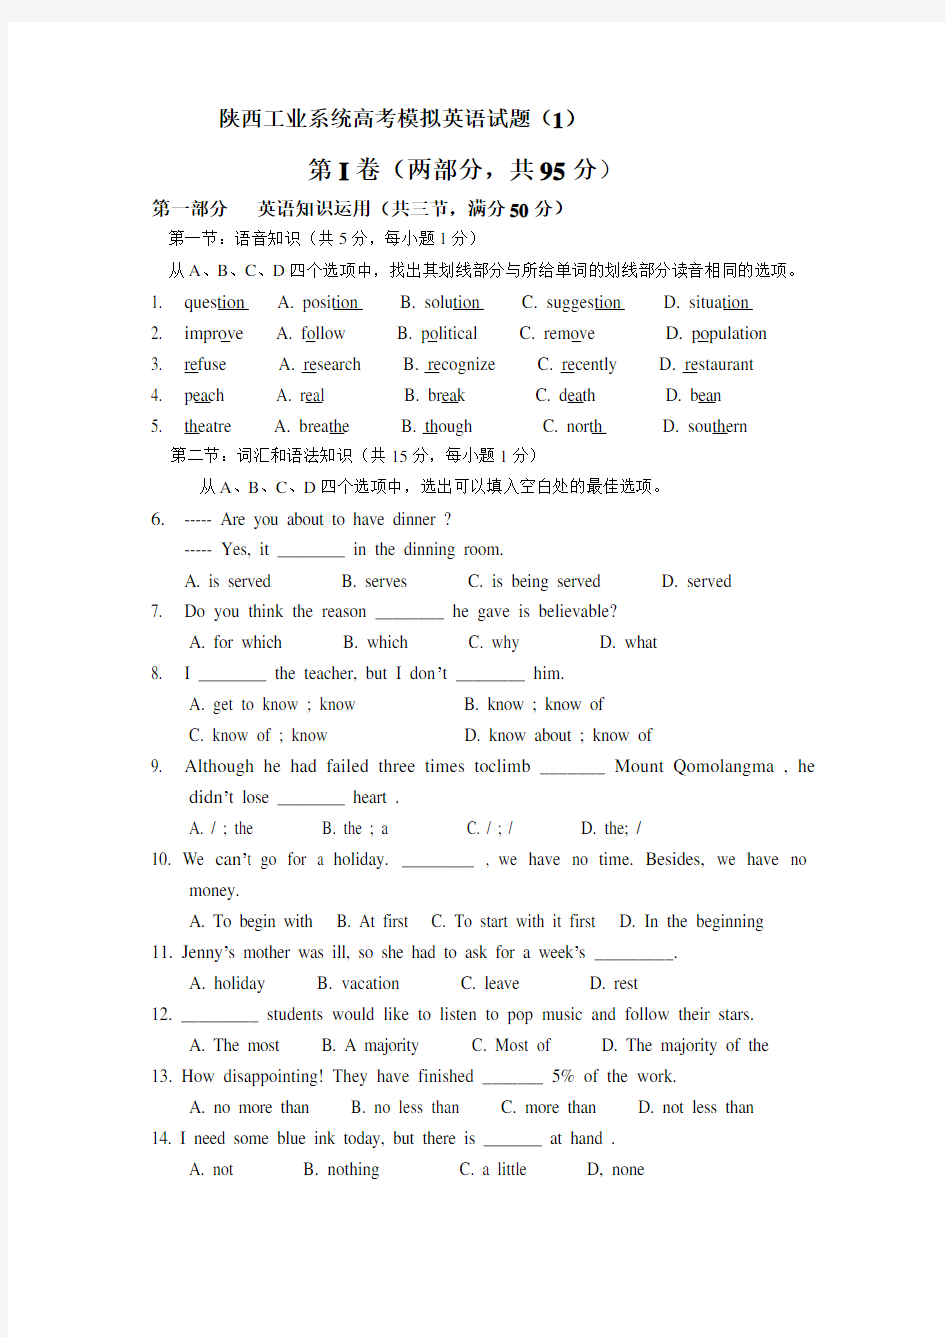 陕西高考英语模拟试题3套(附答案)